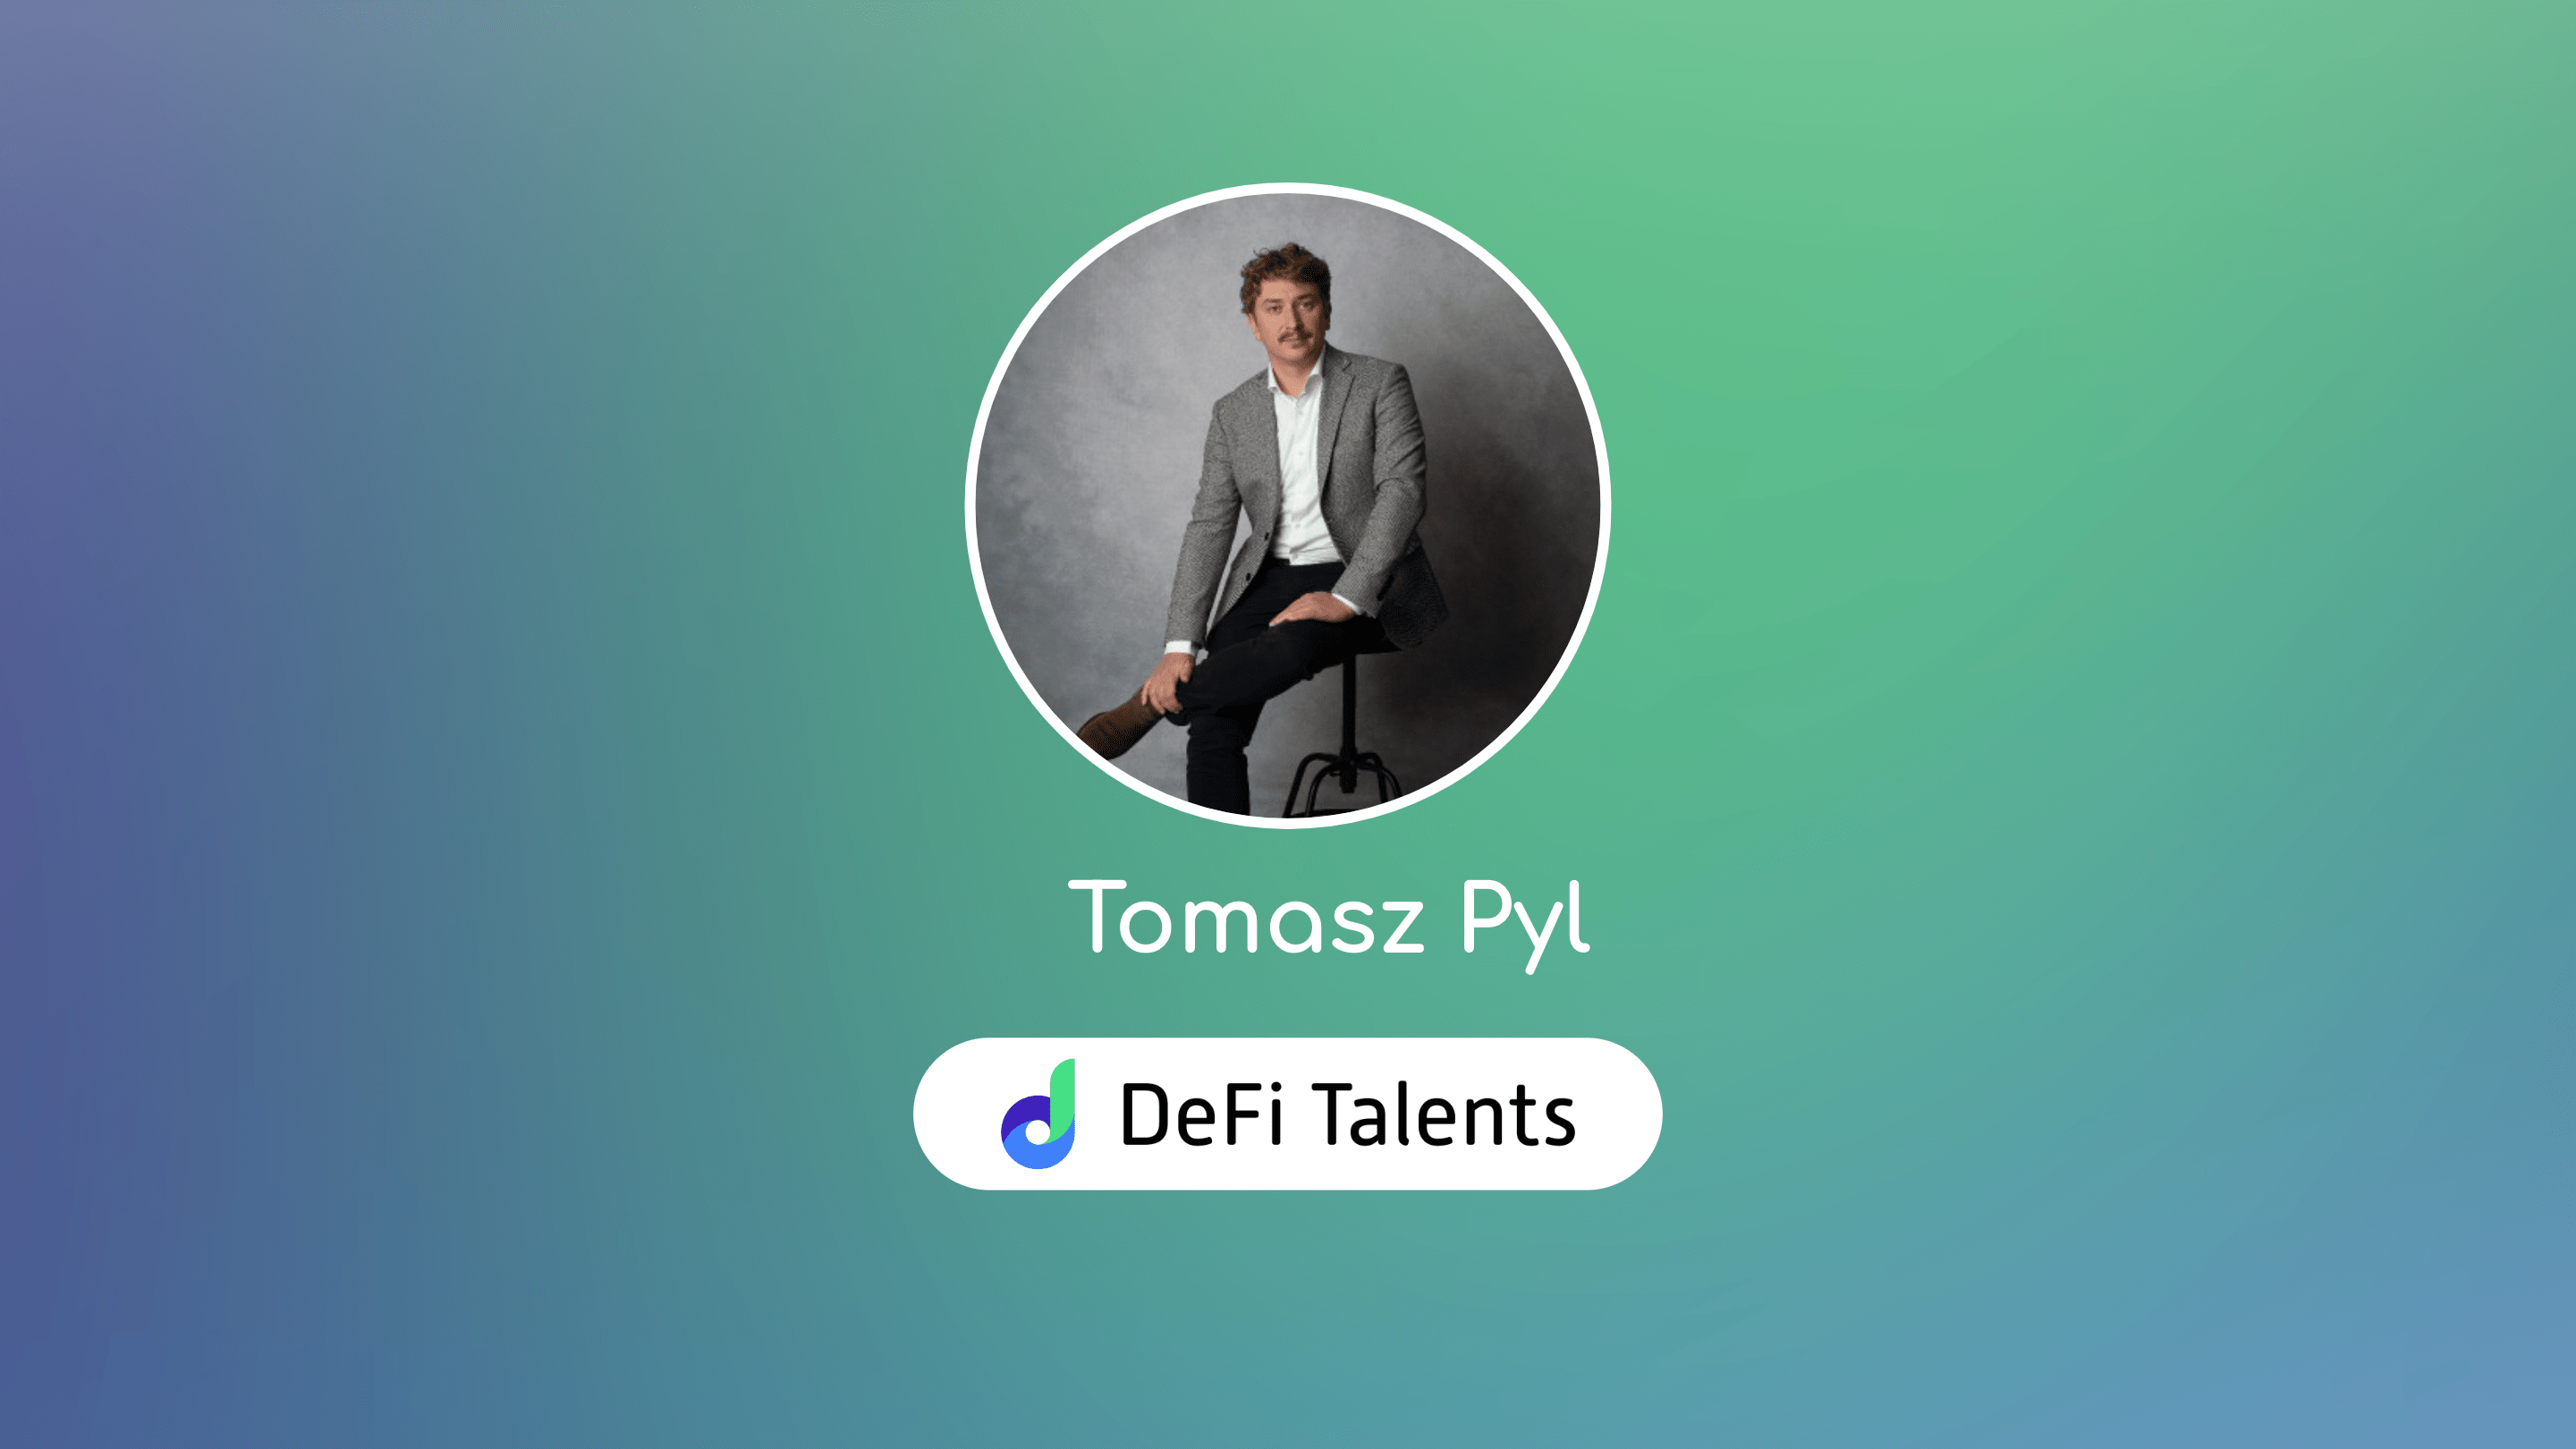 DeFi Talents Mentor – Tomasz Pyl